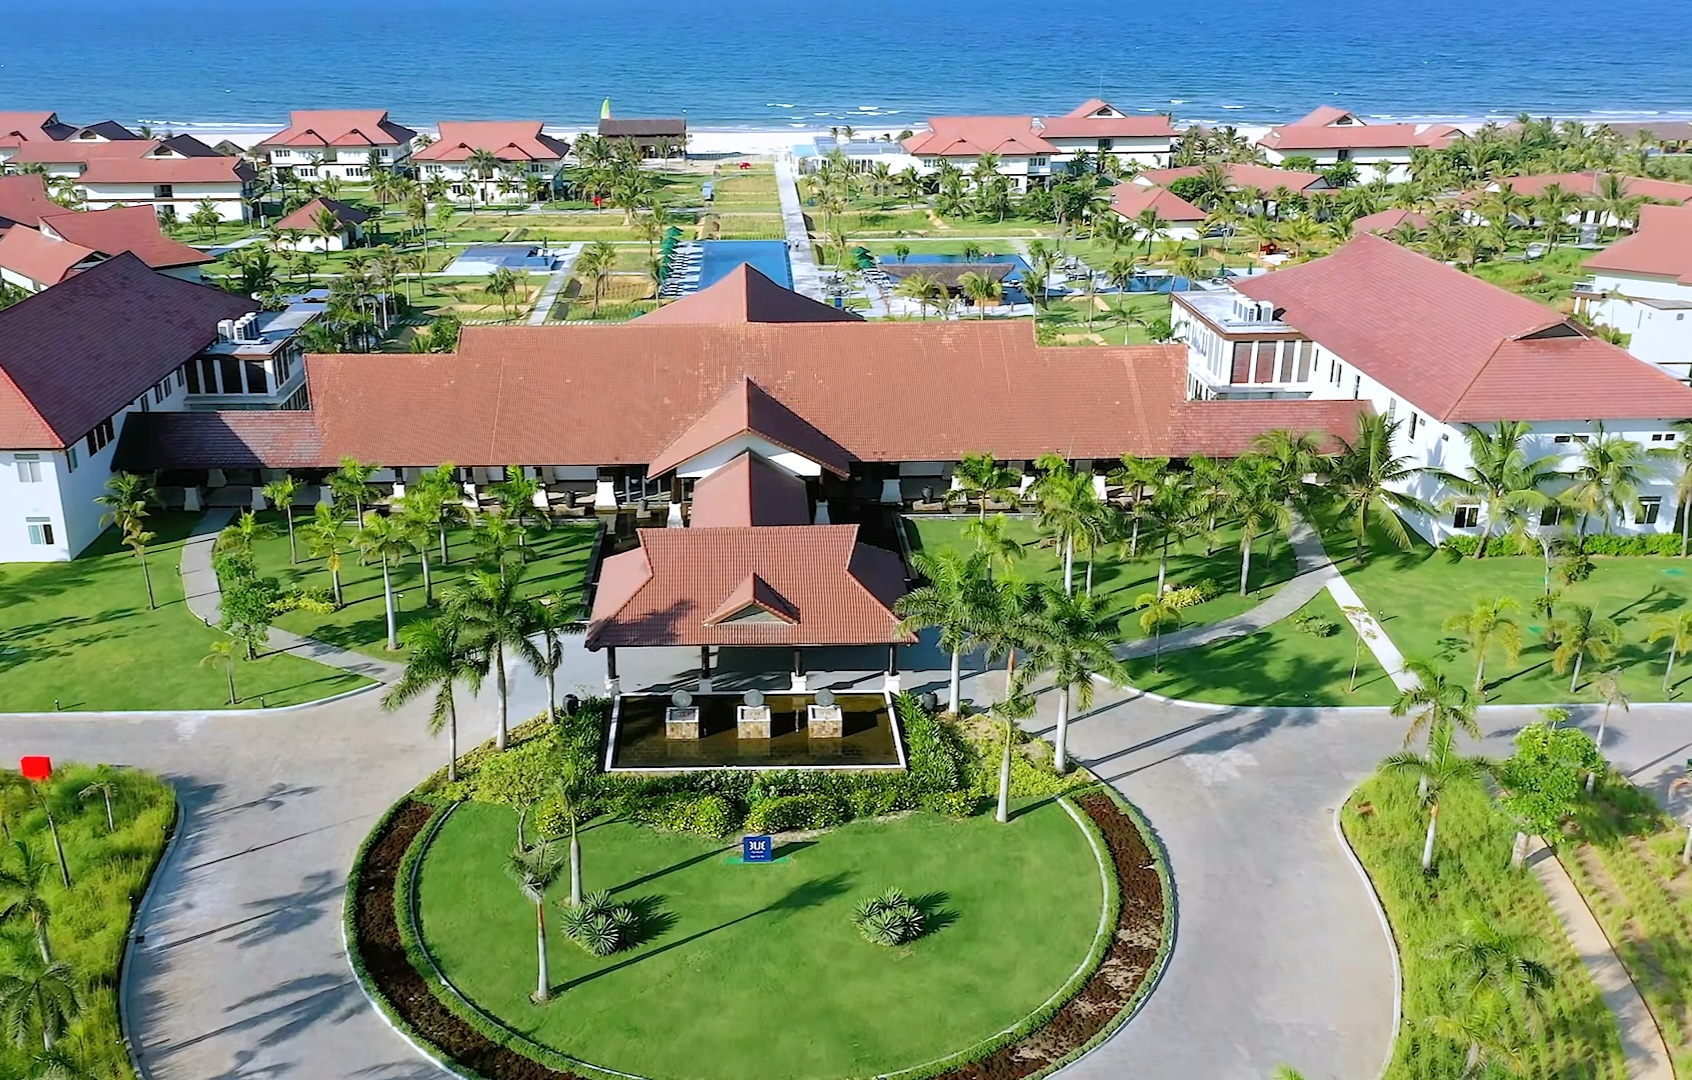 TUI BLUE Nam Hoi An là khu nghỉ dưỡng 5 sao đầu tiên có mặt tại Việt Nam mang thương hiệu TUI BLUE của tập đoàn du lịch và lữ hành lớn nhất thế giới TUI Group.